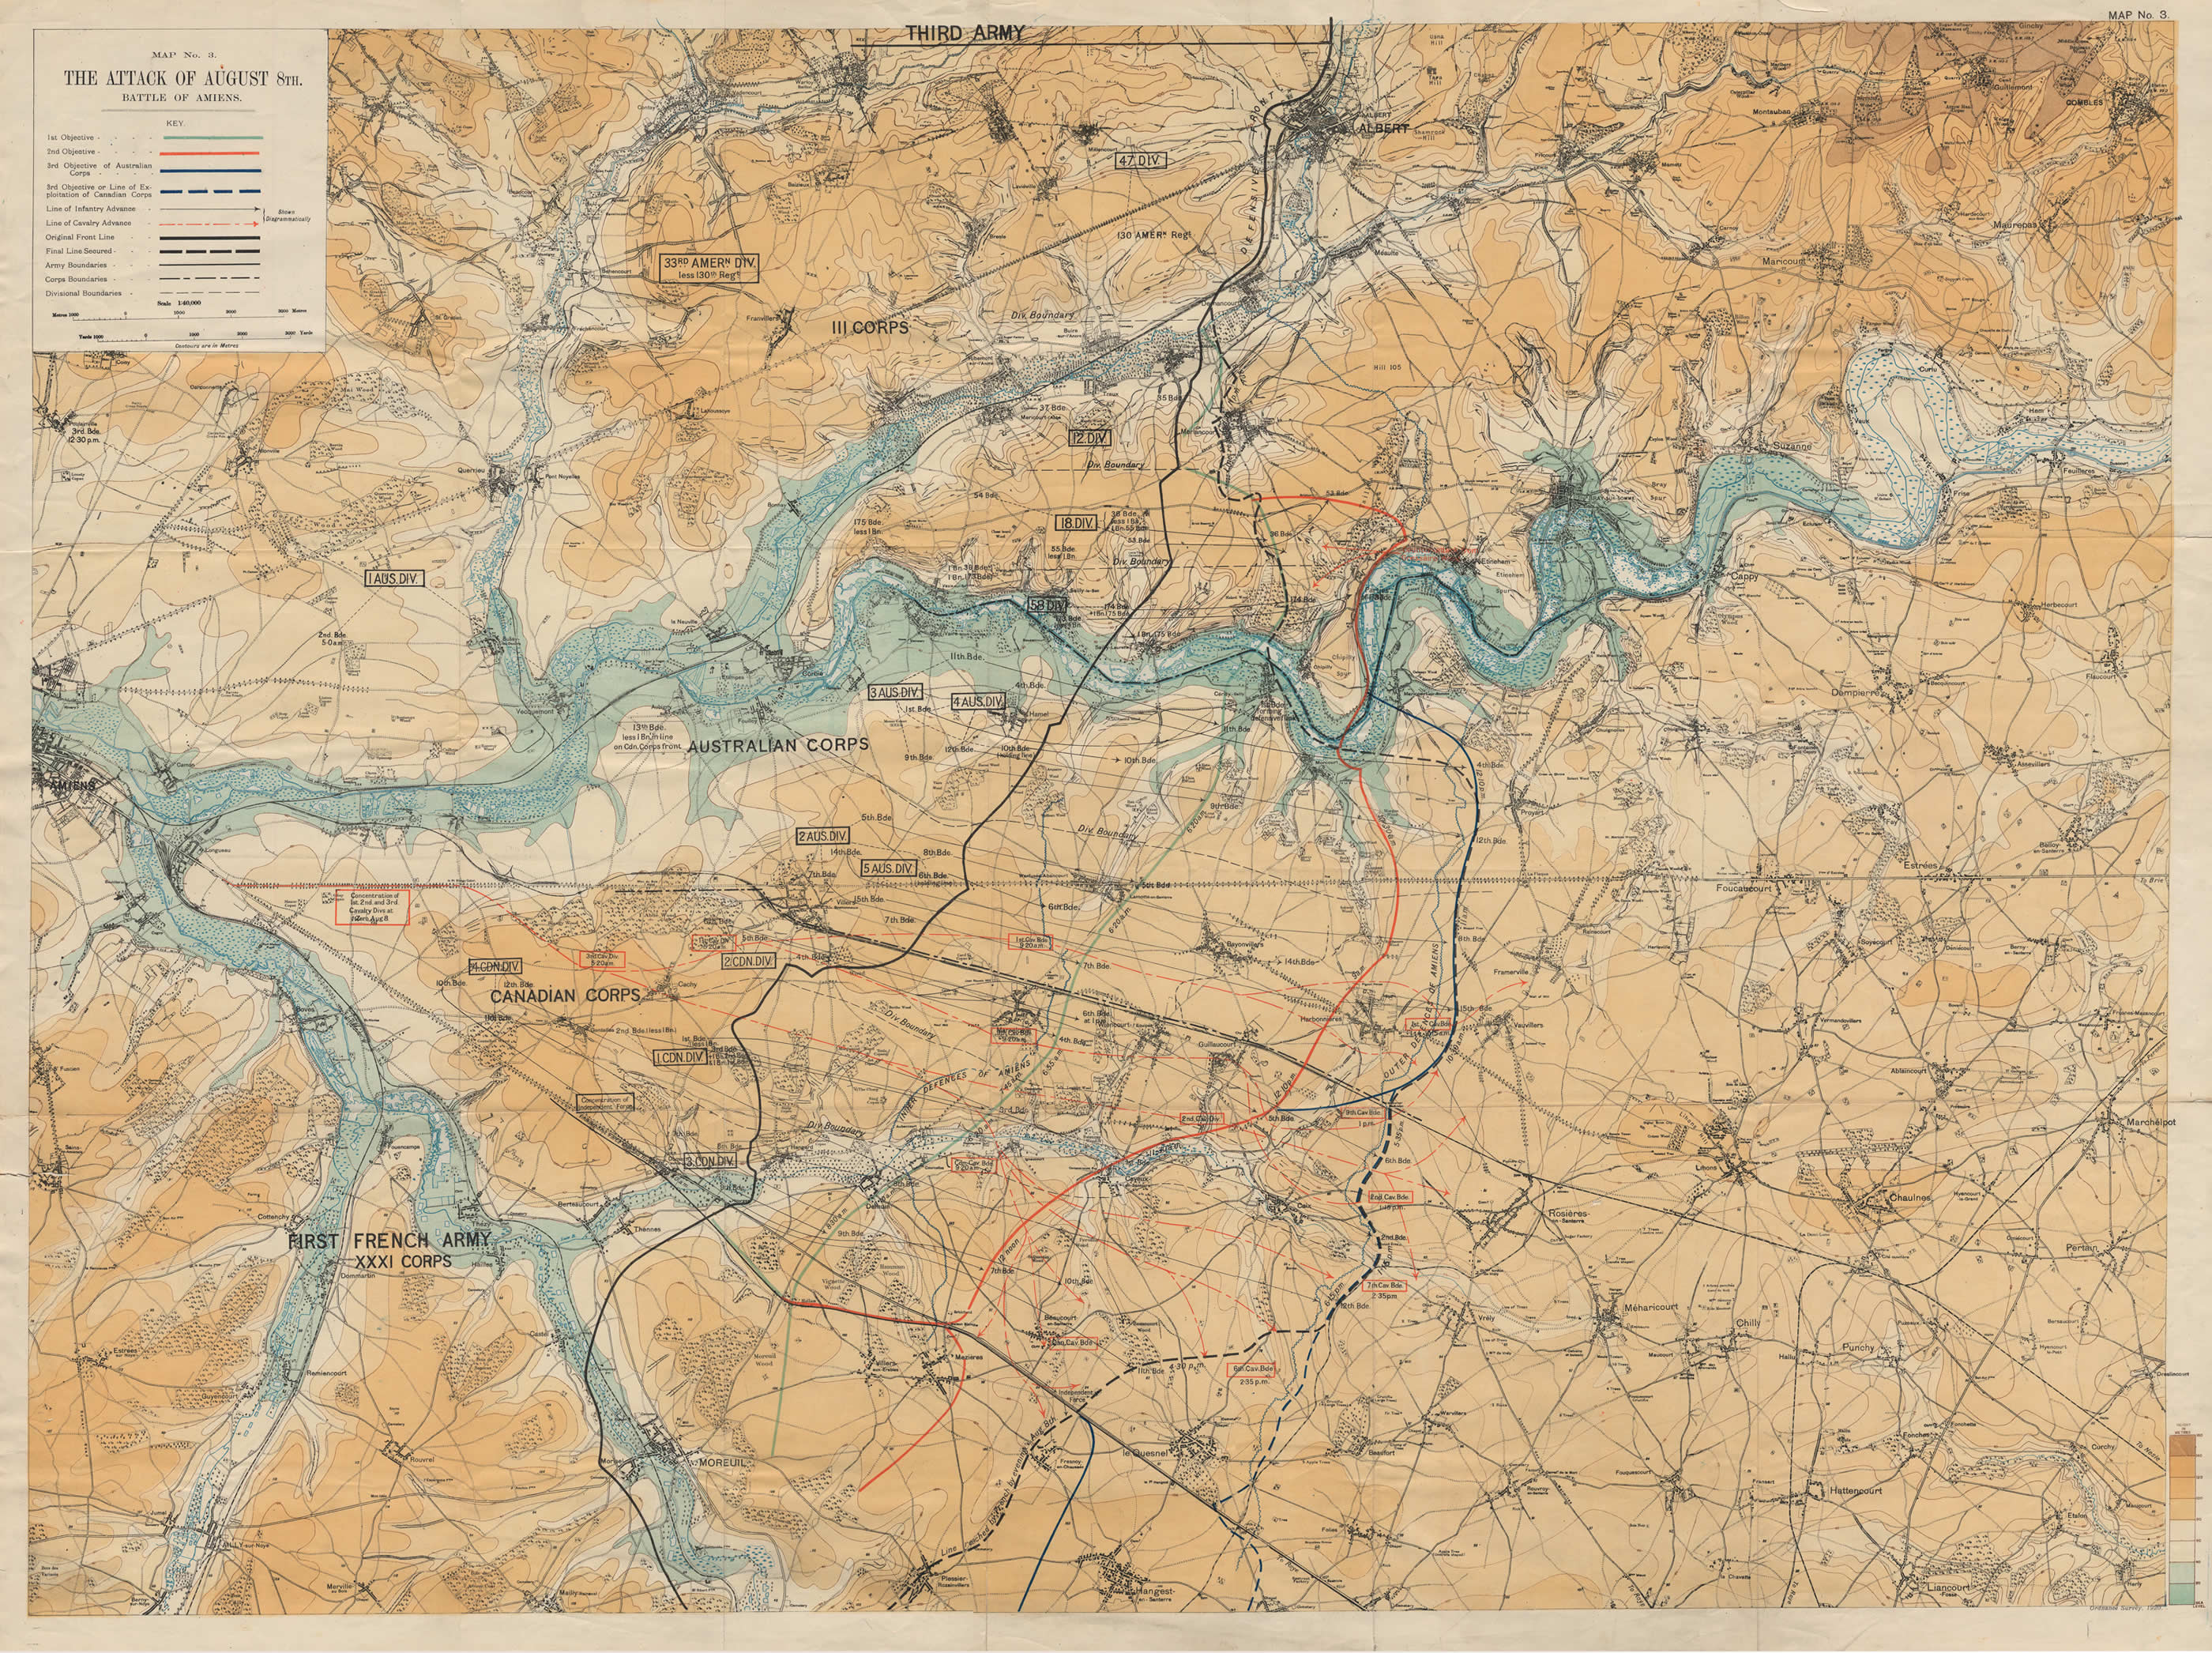 Carte de la bataille d'Amiens, le 8 août 1918